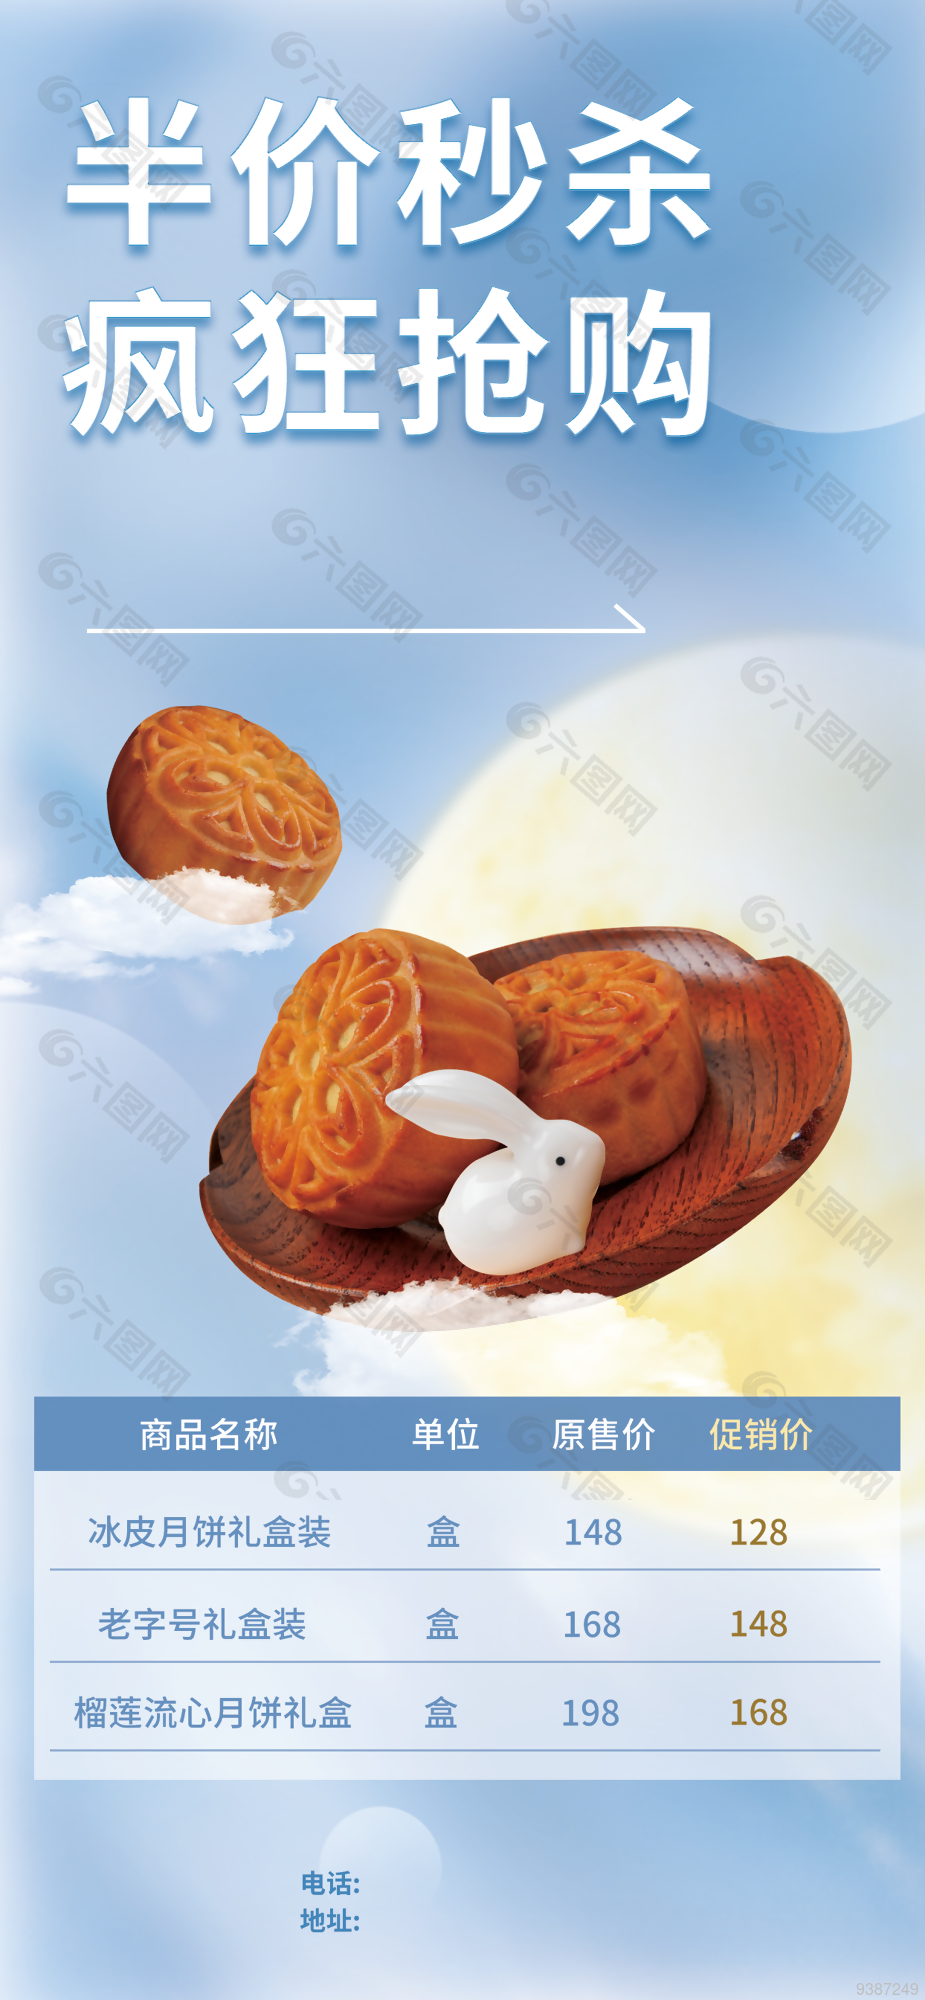 中秋节月饼疯狂促销宣传海报